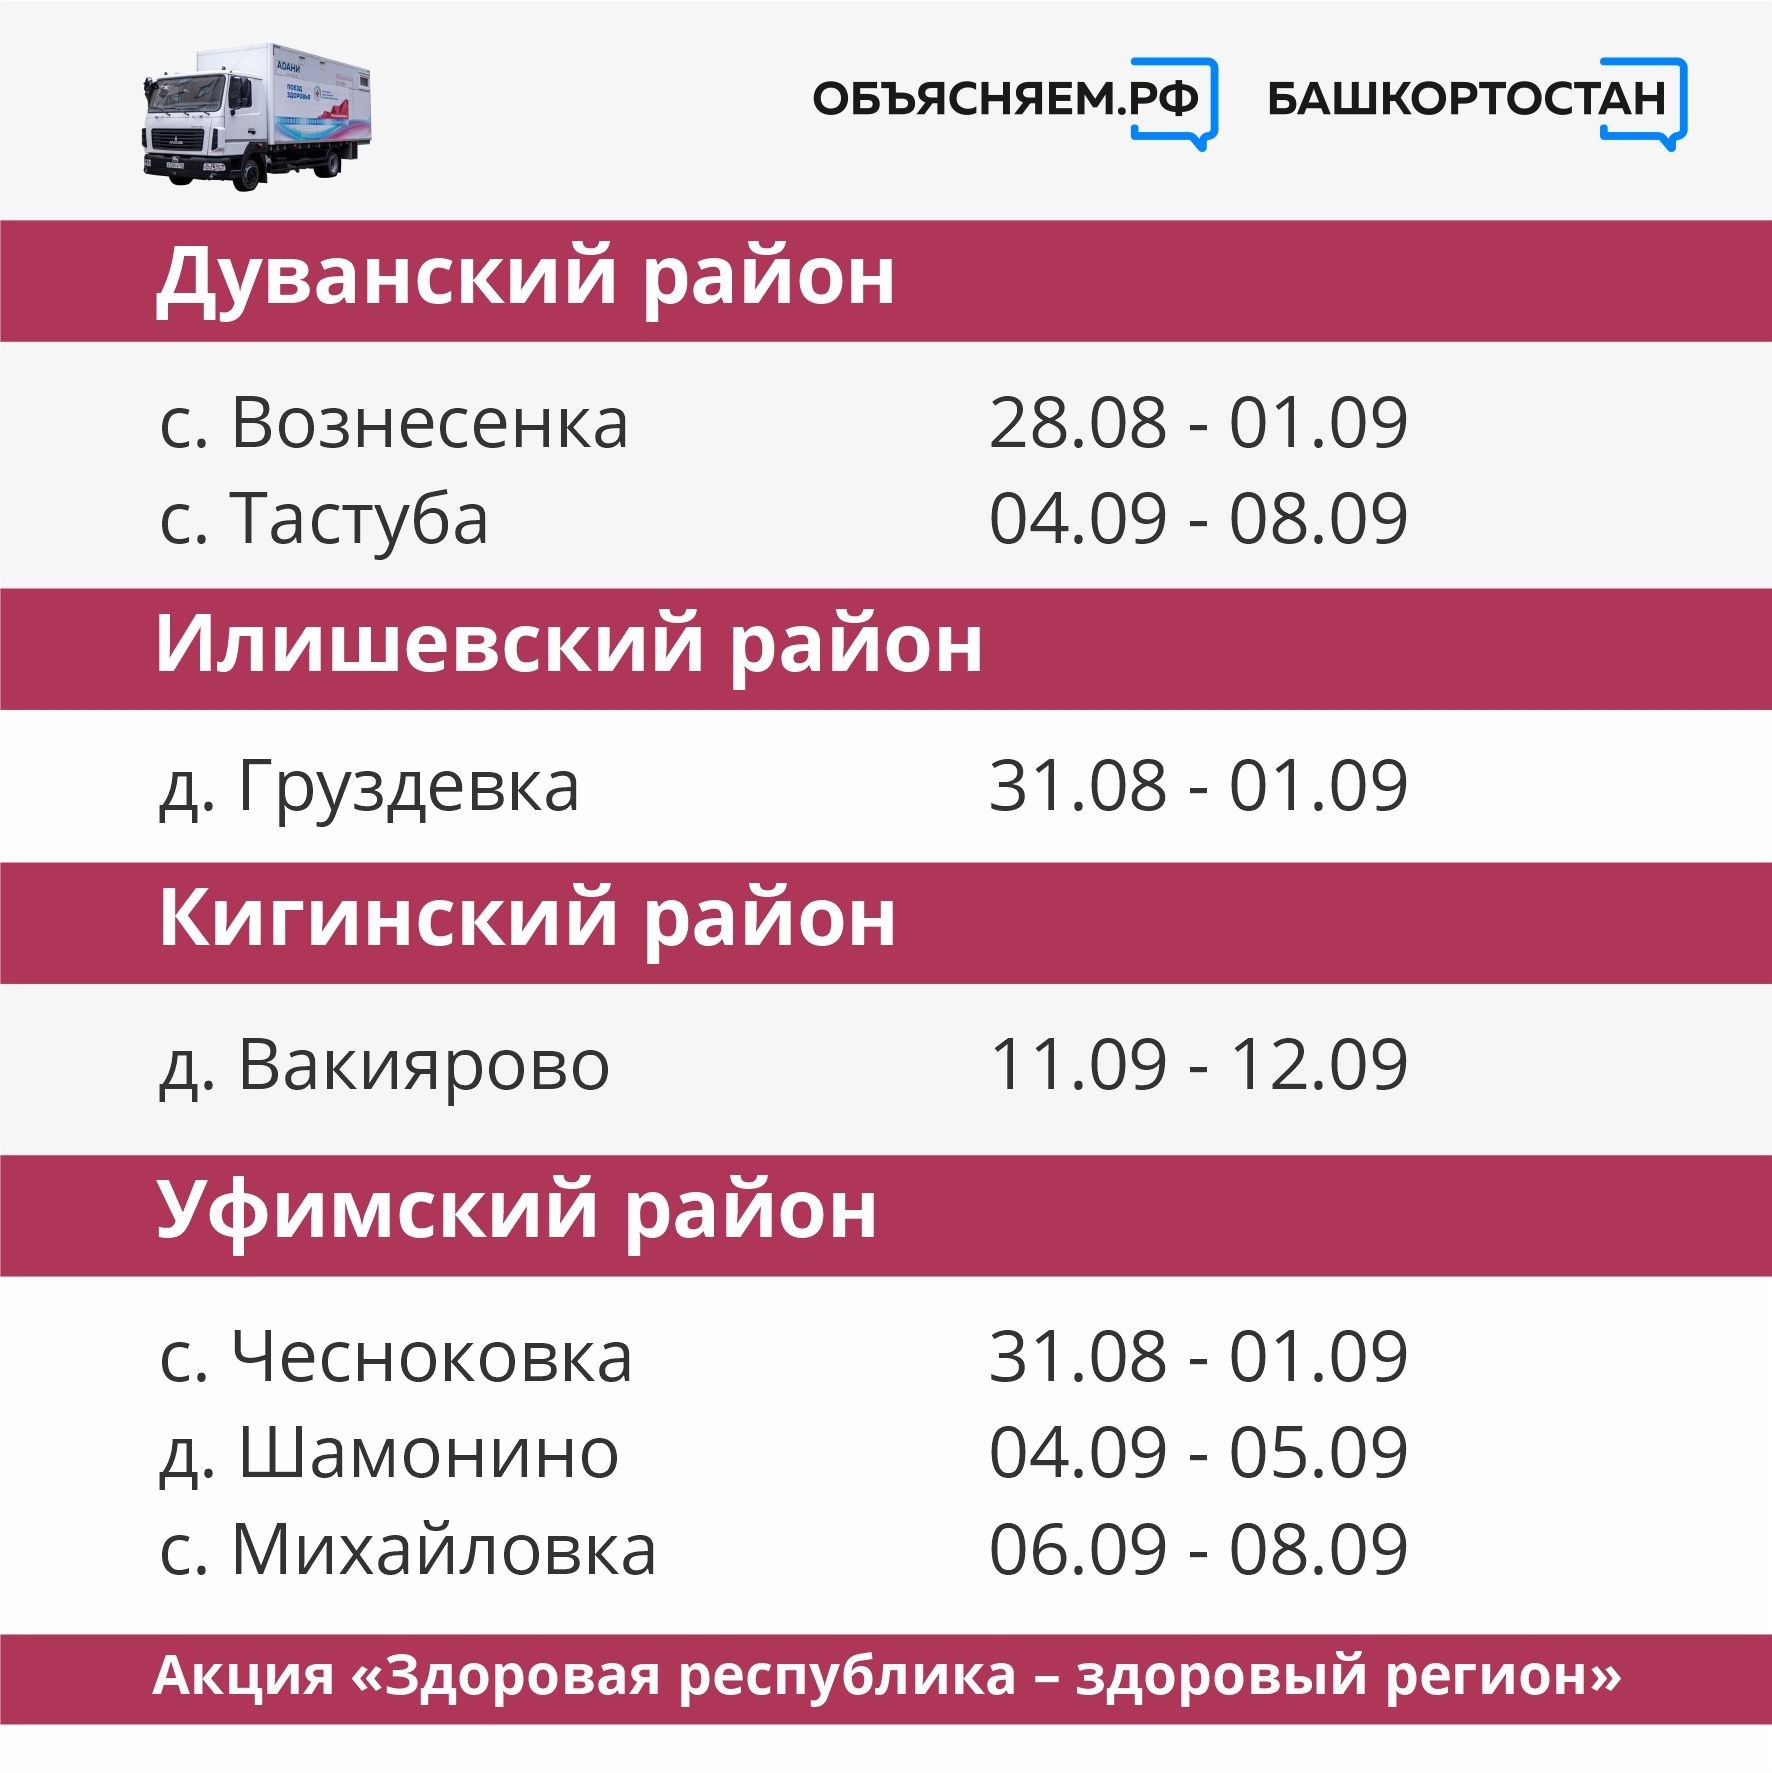 Маршруты поезда здоровья в Башкортостане в сентябре 2023 года